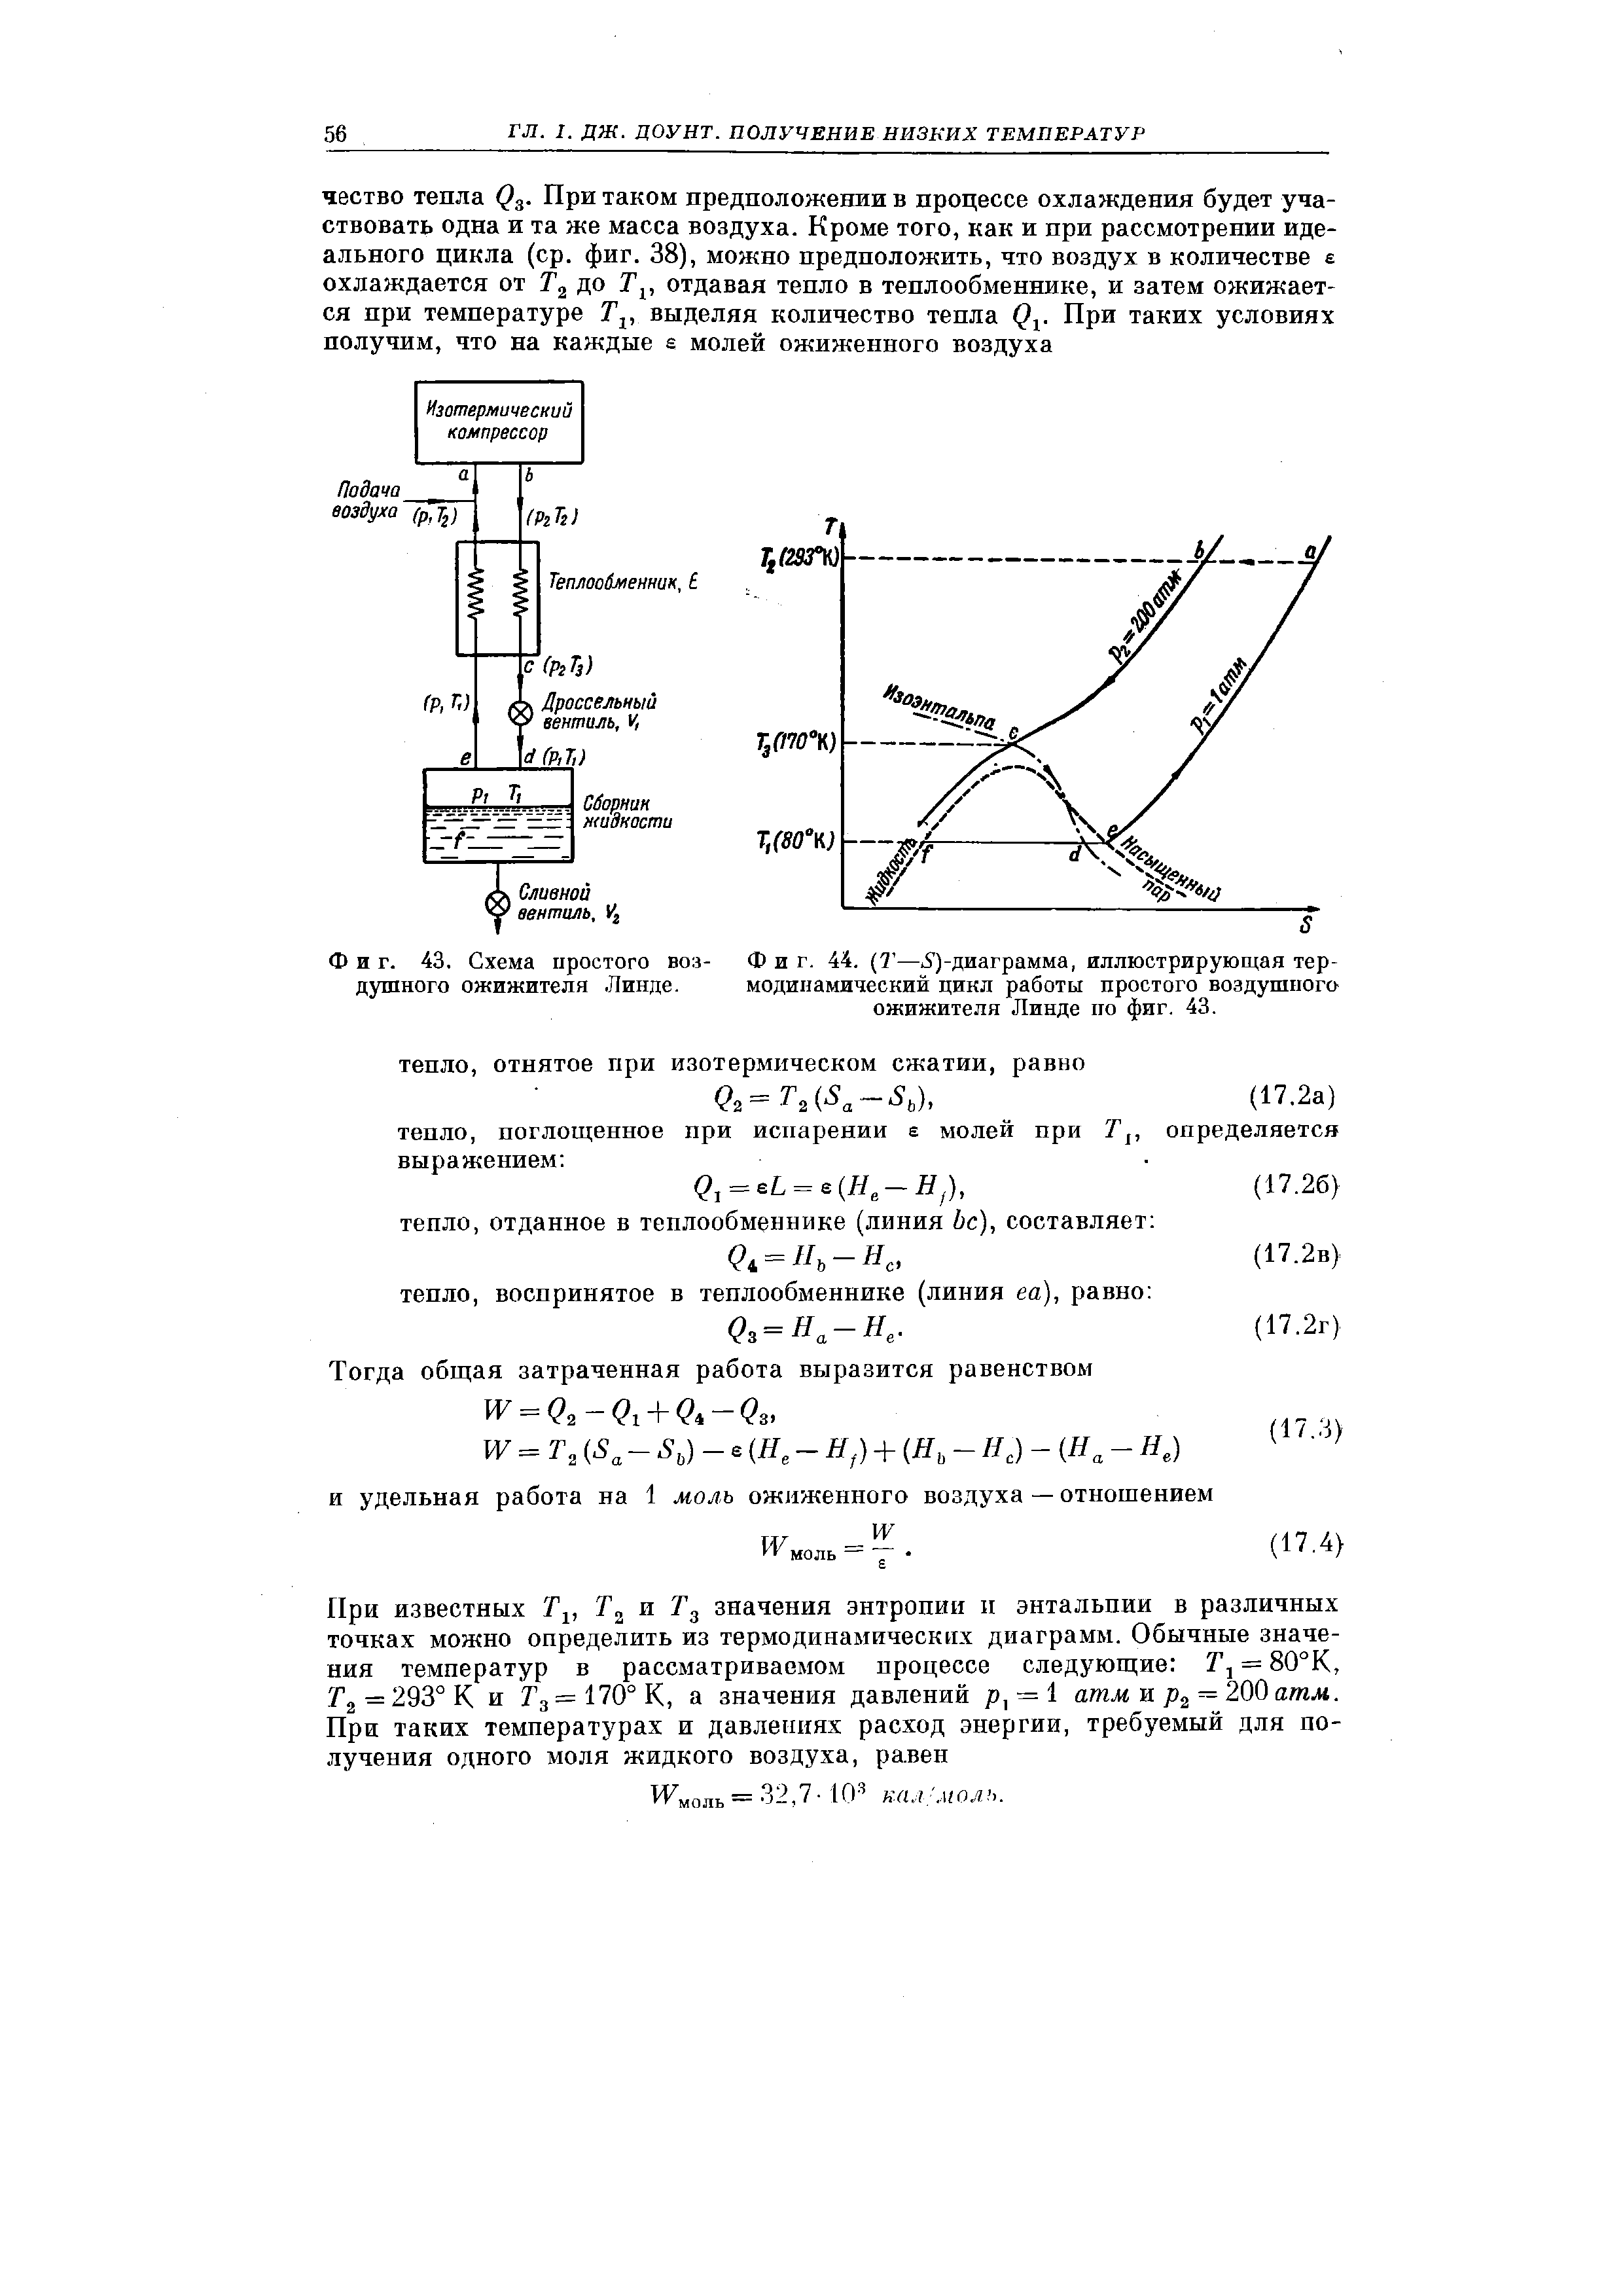 Фиг. 44. Т— У)-диаграмма, иллюстрирующая <a href="/info/19066">термодинамический цикл</a> работы простого воздушпога ожижителя Линде по фиг. 43.
